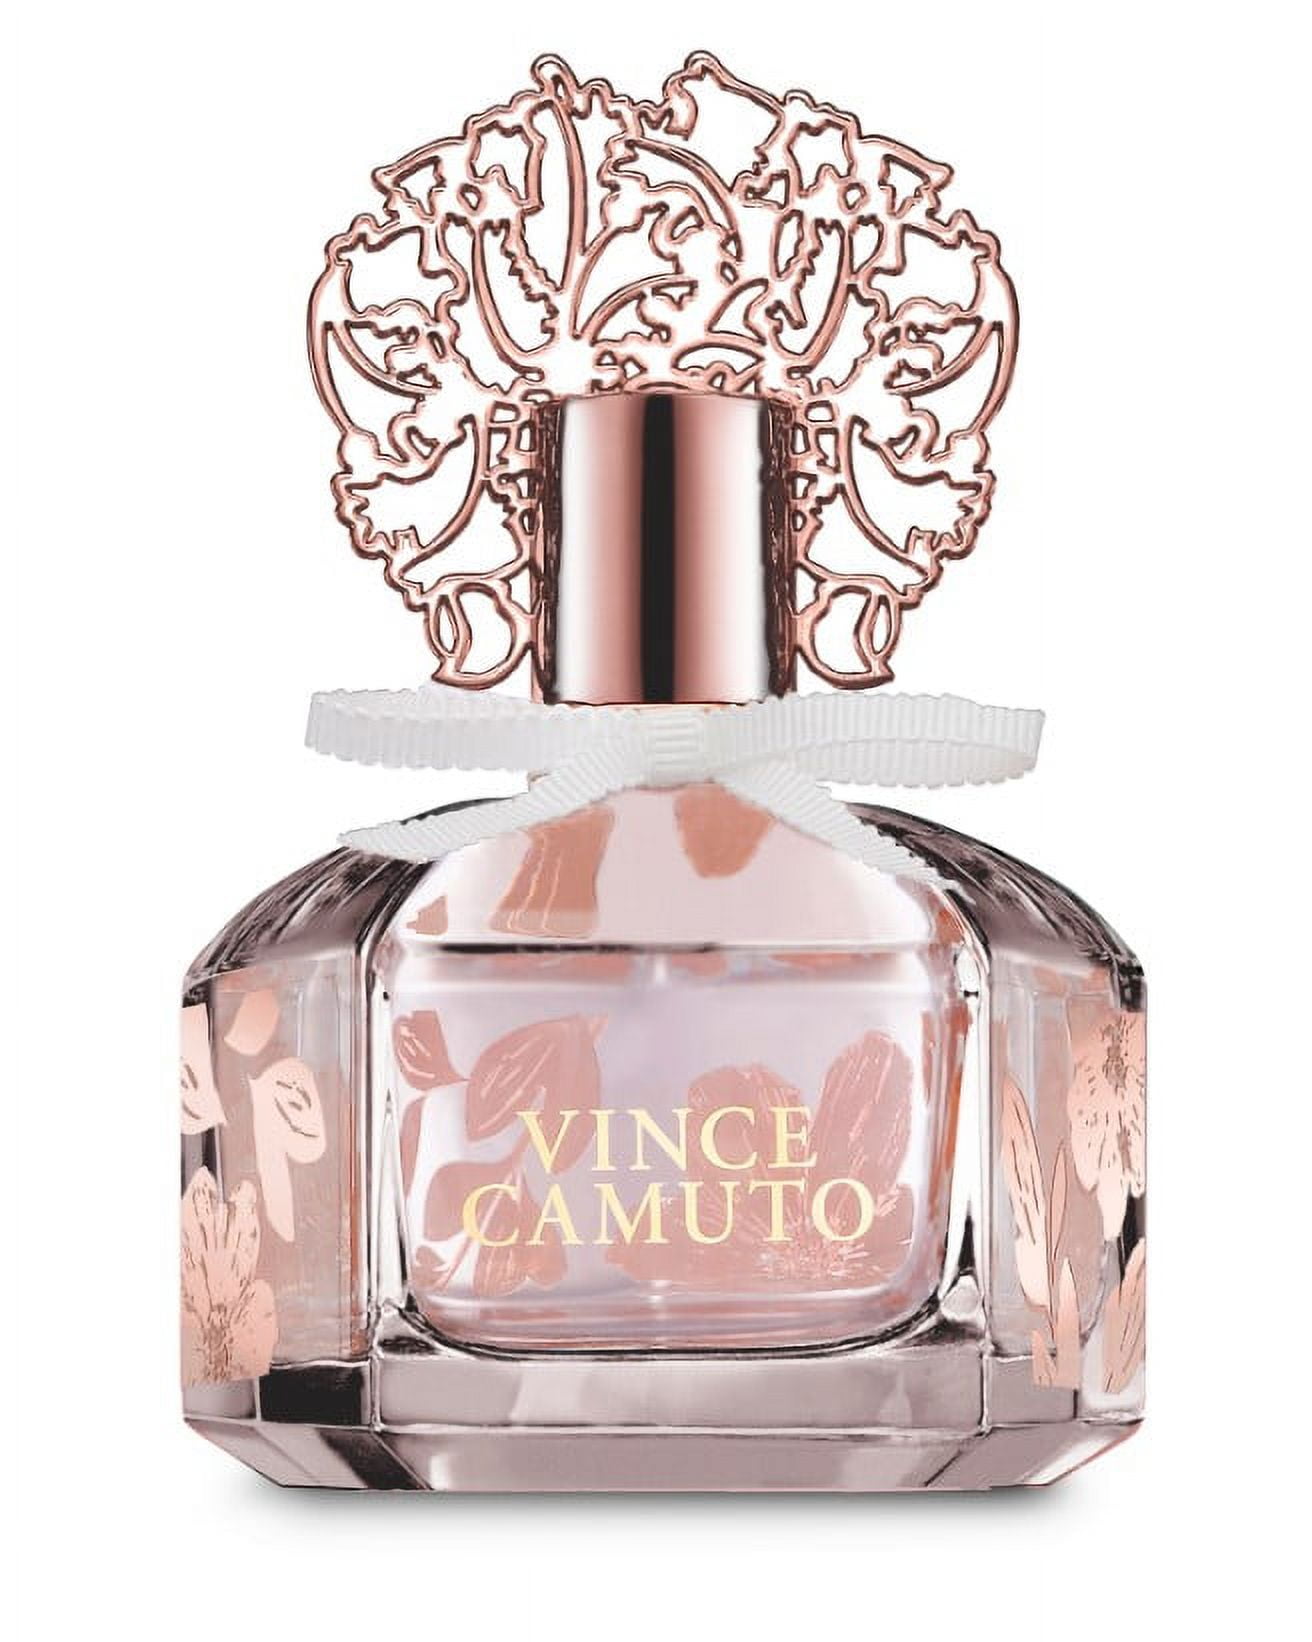 Vince Camuto Amore 3.4 oz / 100 ml Eau De Parfum Spray For Women